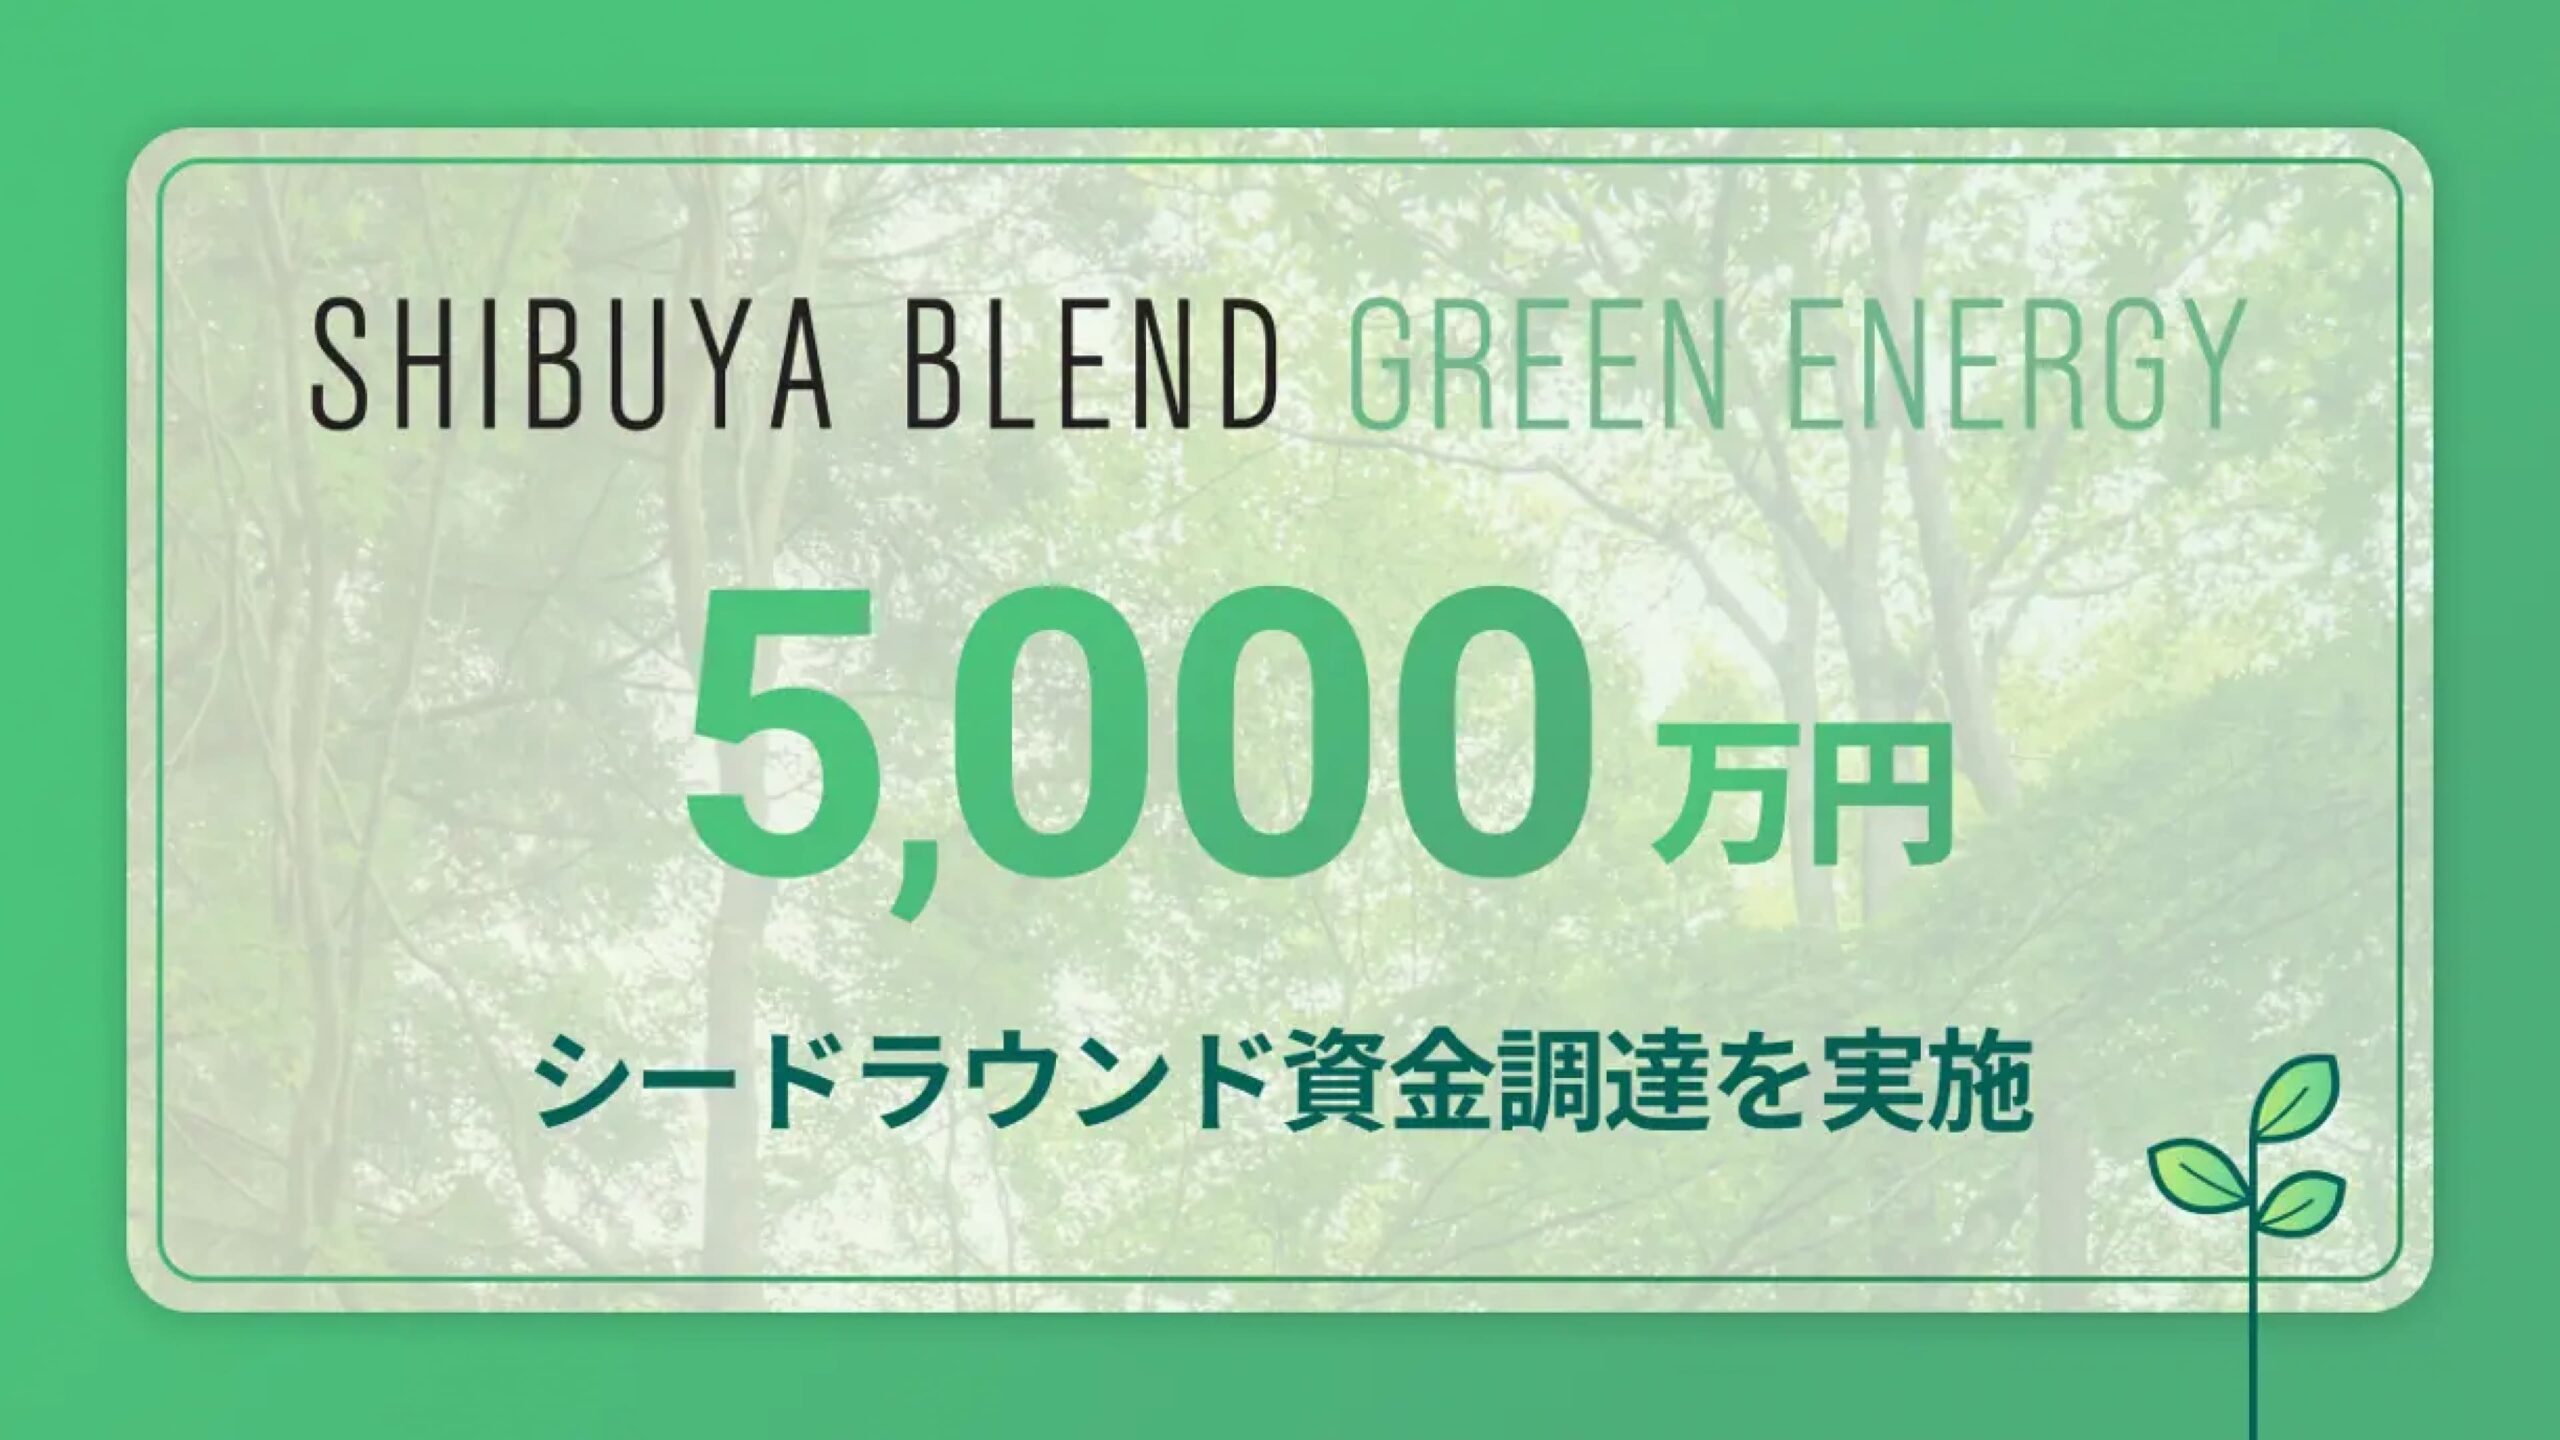 日本カーボンクレジット取引所を運営の渋谷ブレンドグリーンエナジー株式会社、5,000万円の資金調達を実施